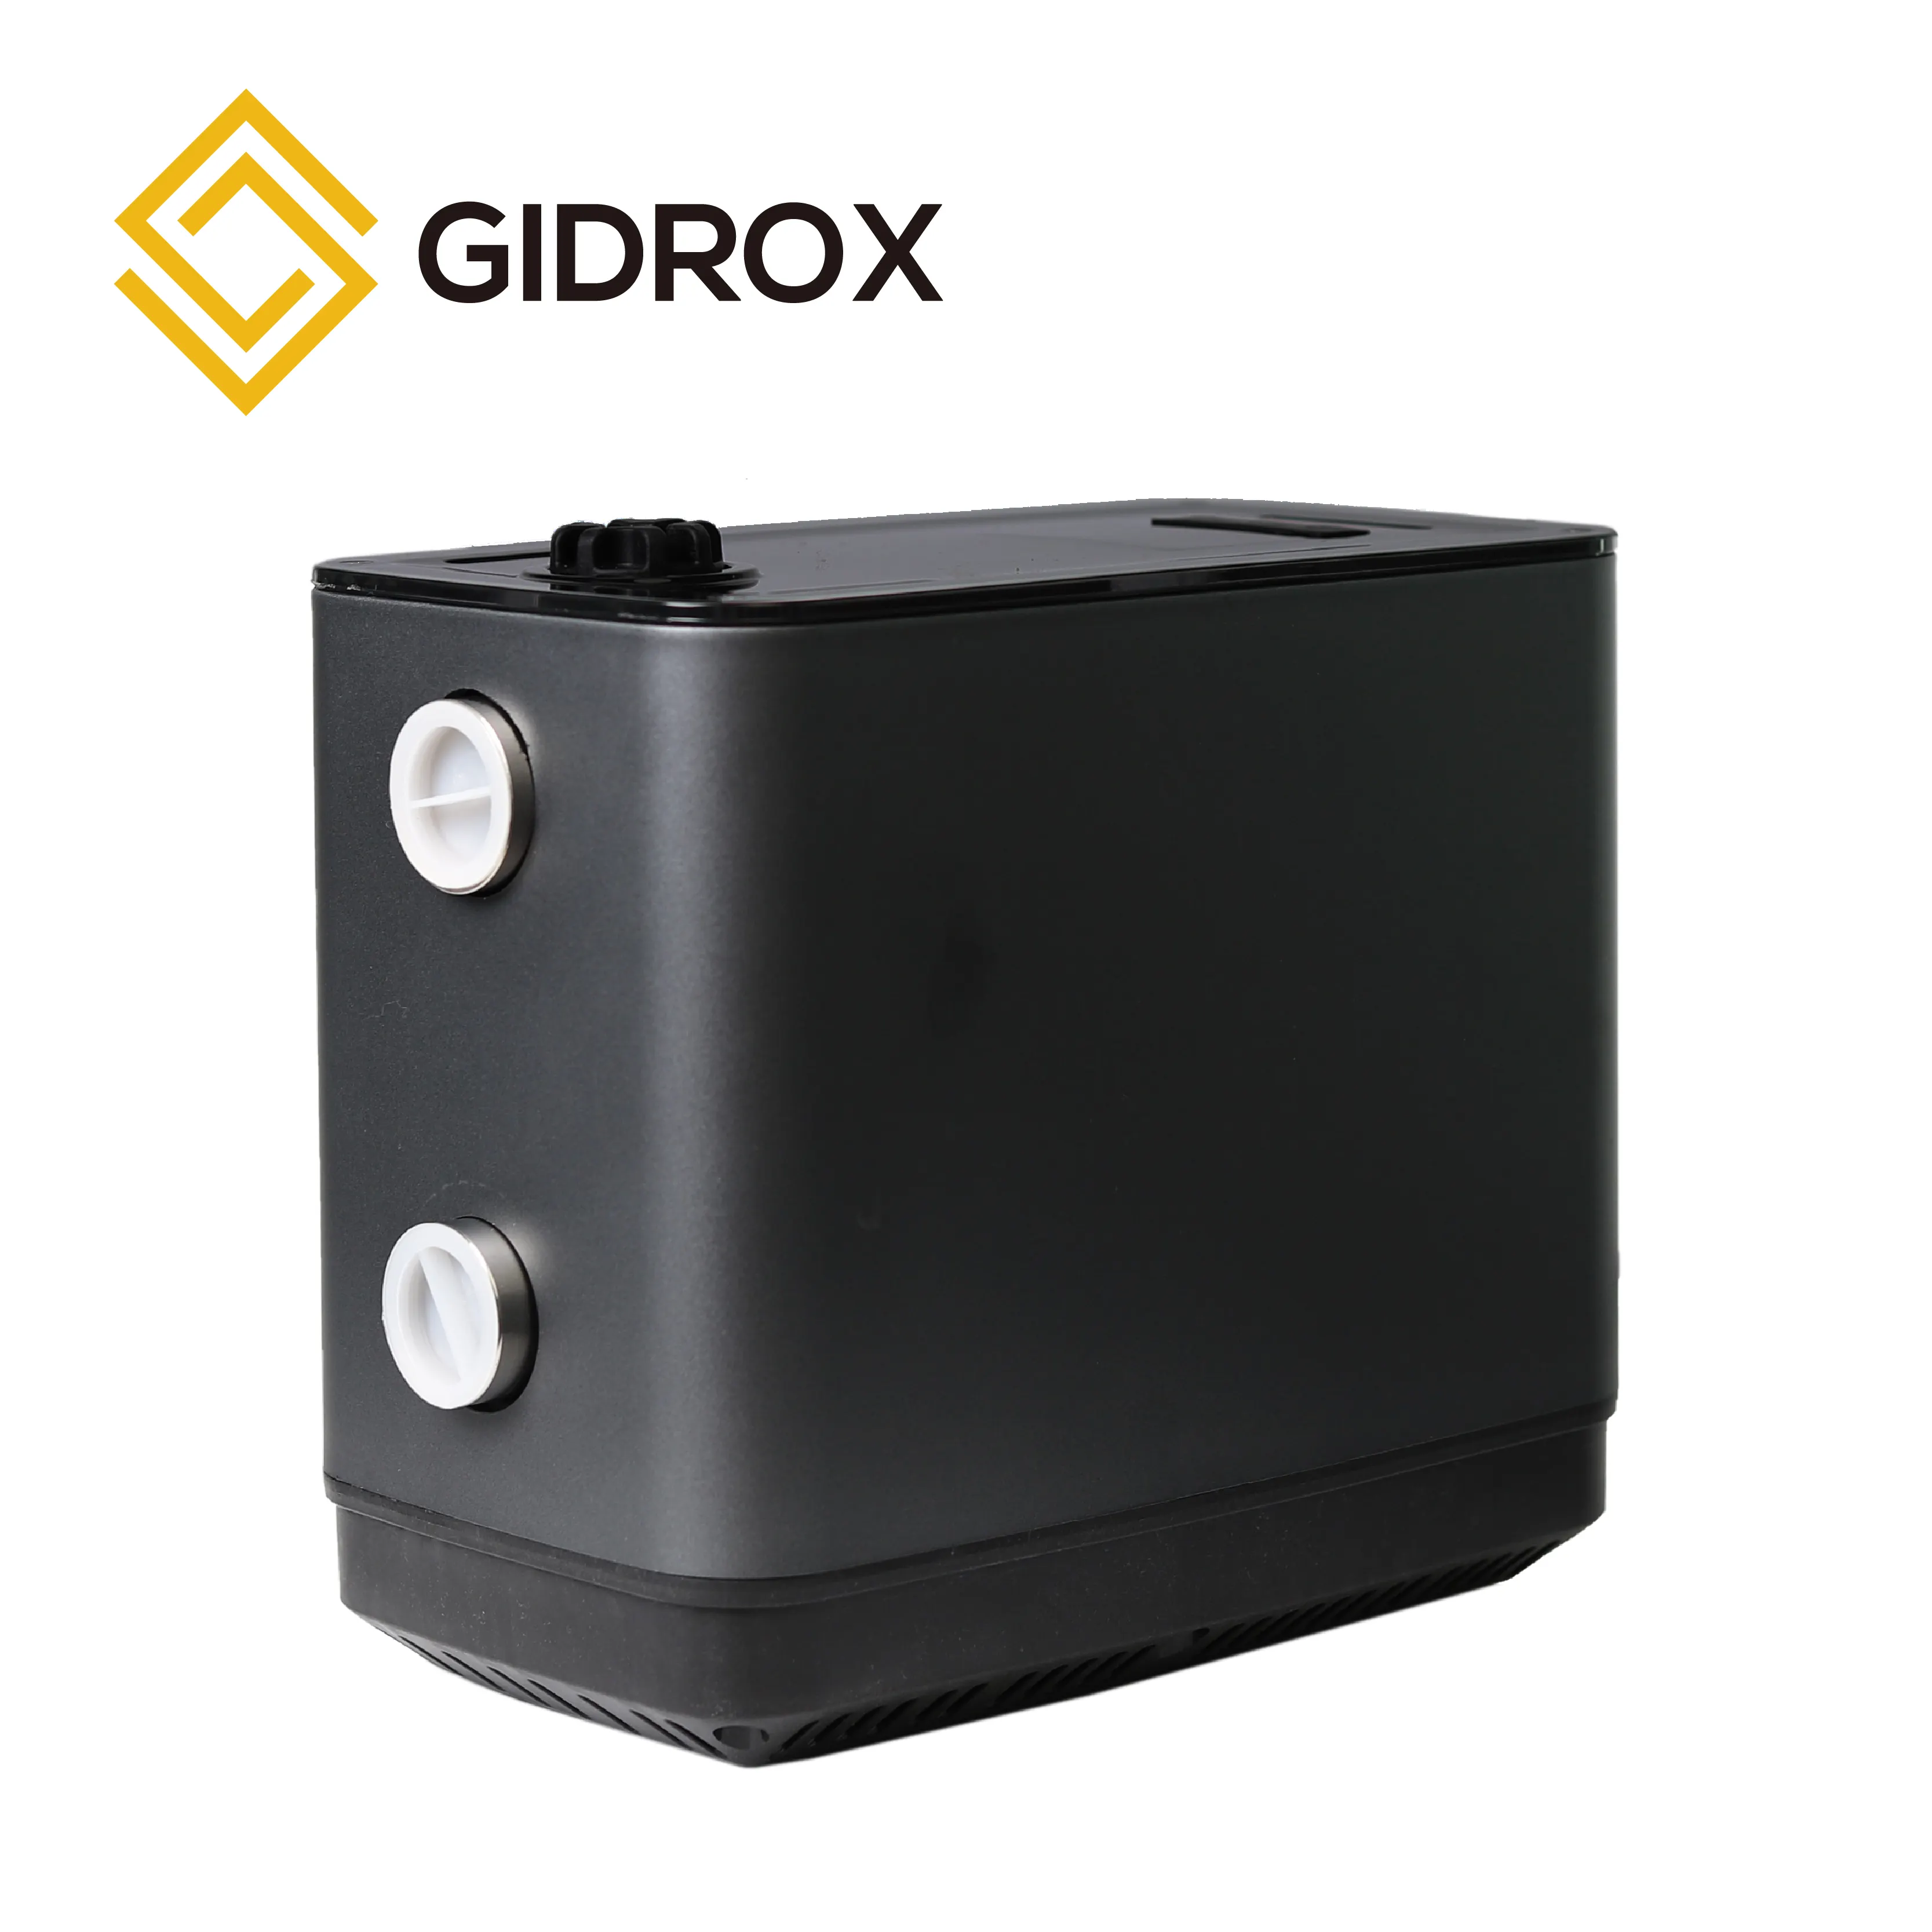 GIDROX hidrofor pompa ev akıllı değişken hız güçlendirici sistemi kendinden emişli kalıcı mıknatıs pompası